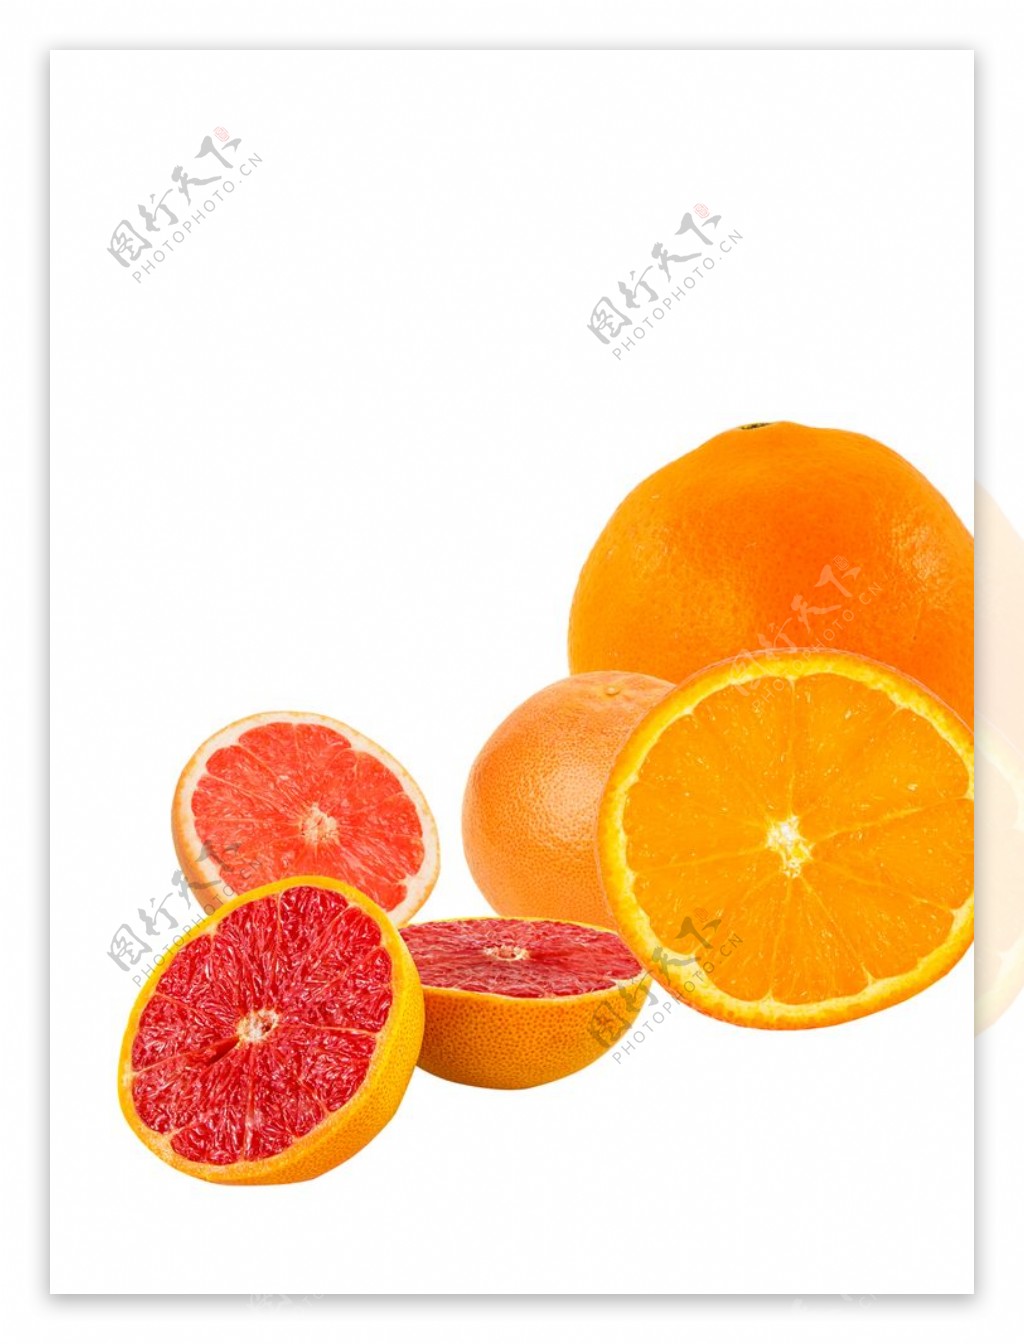 橙子红肉脐橙血橙甜橙图片